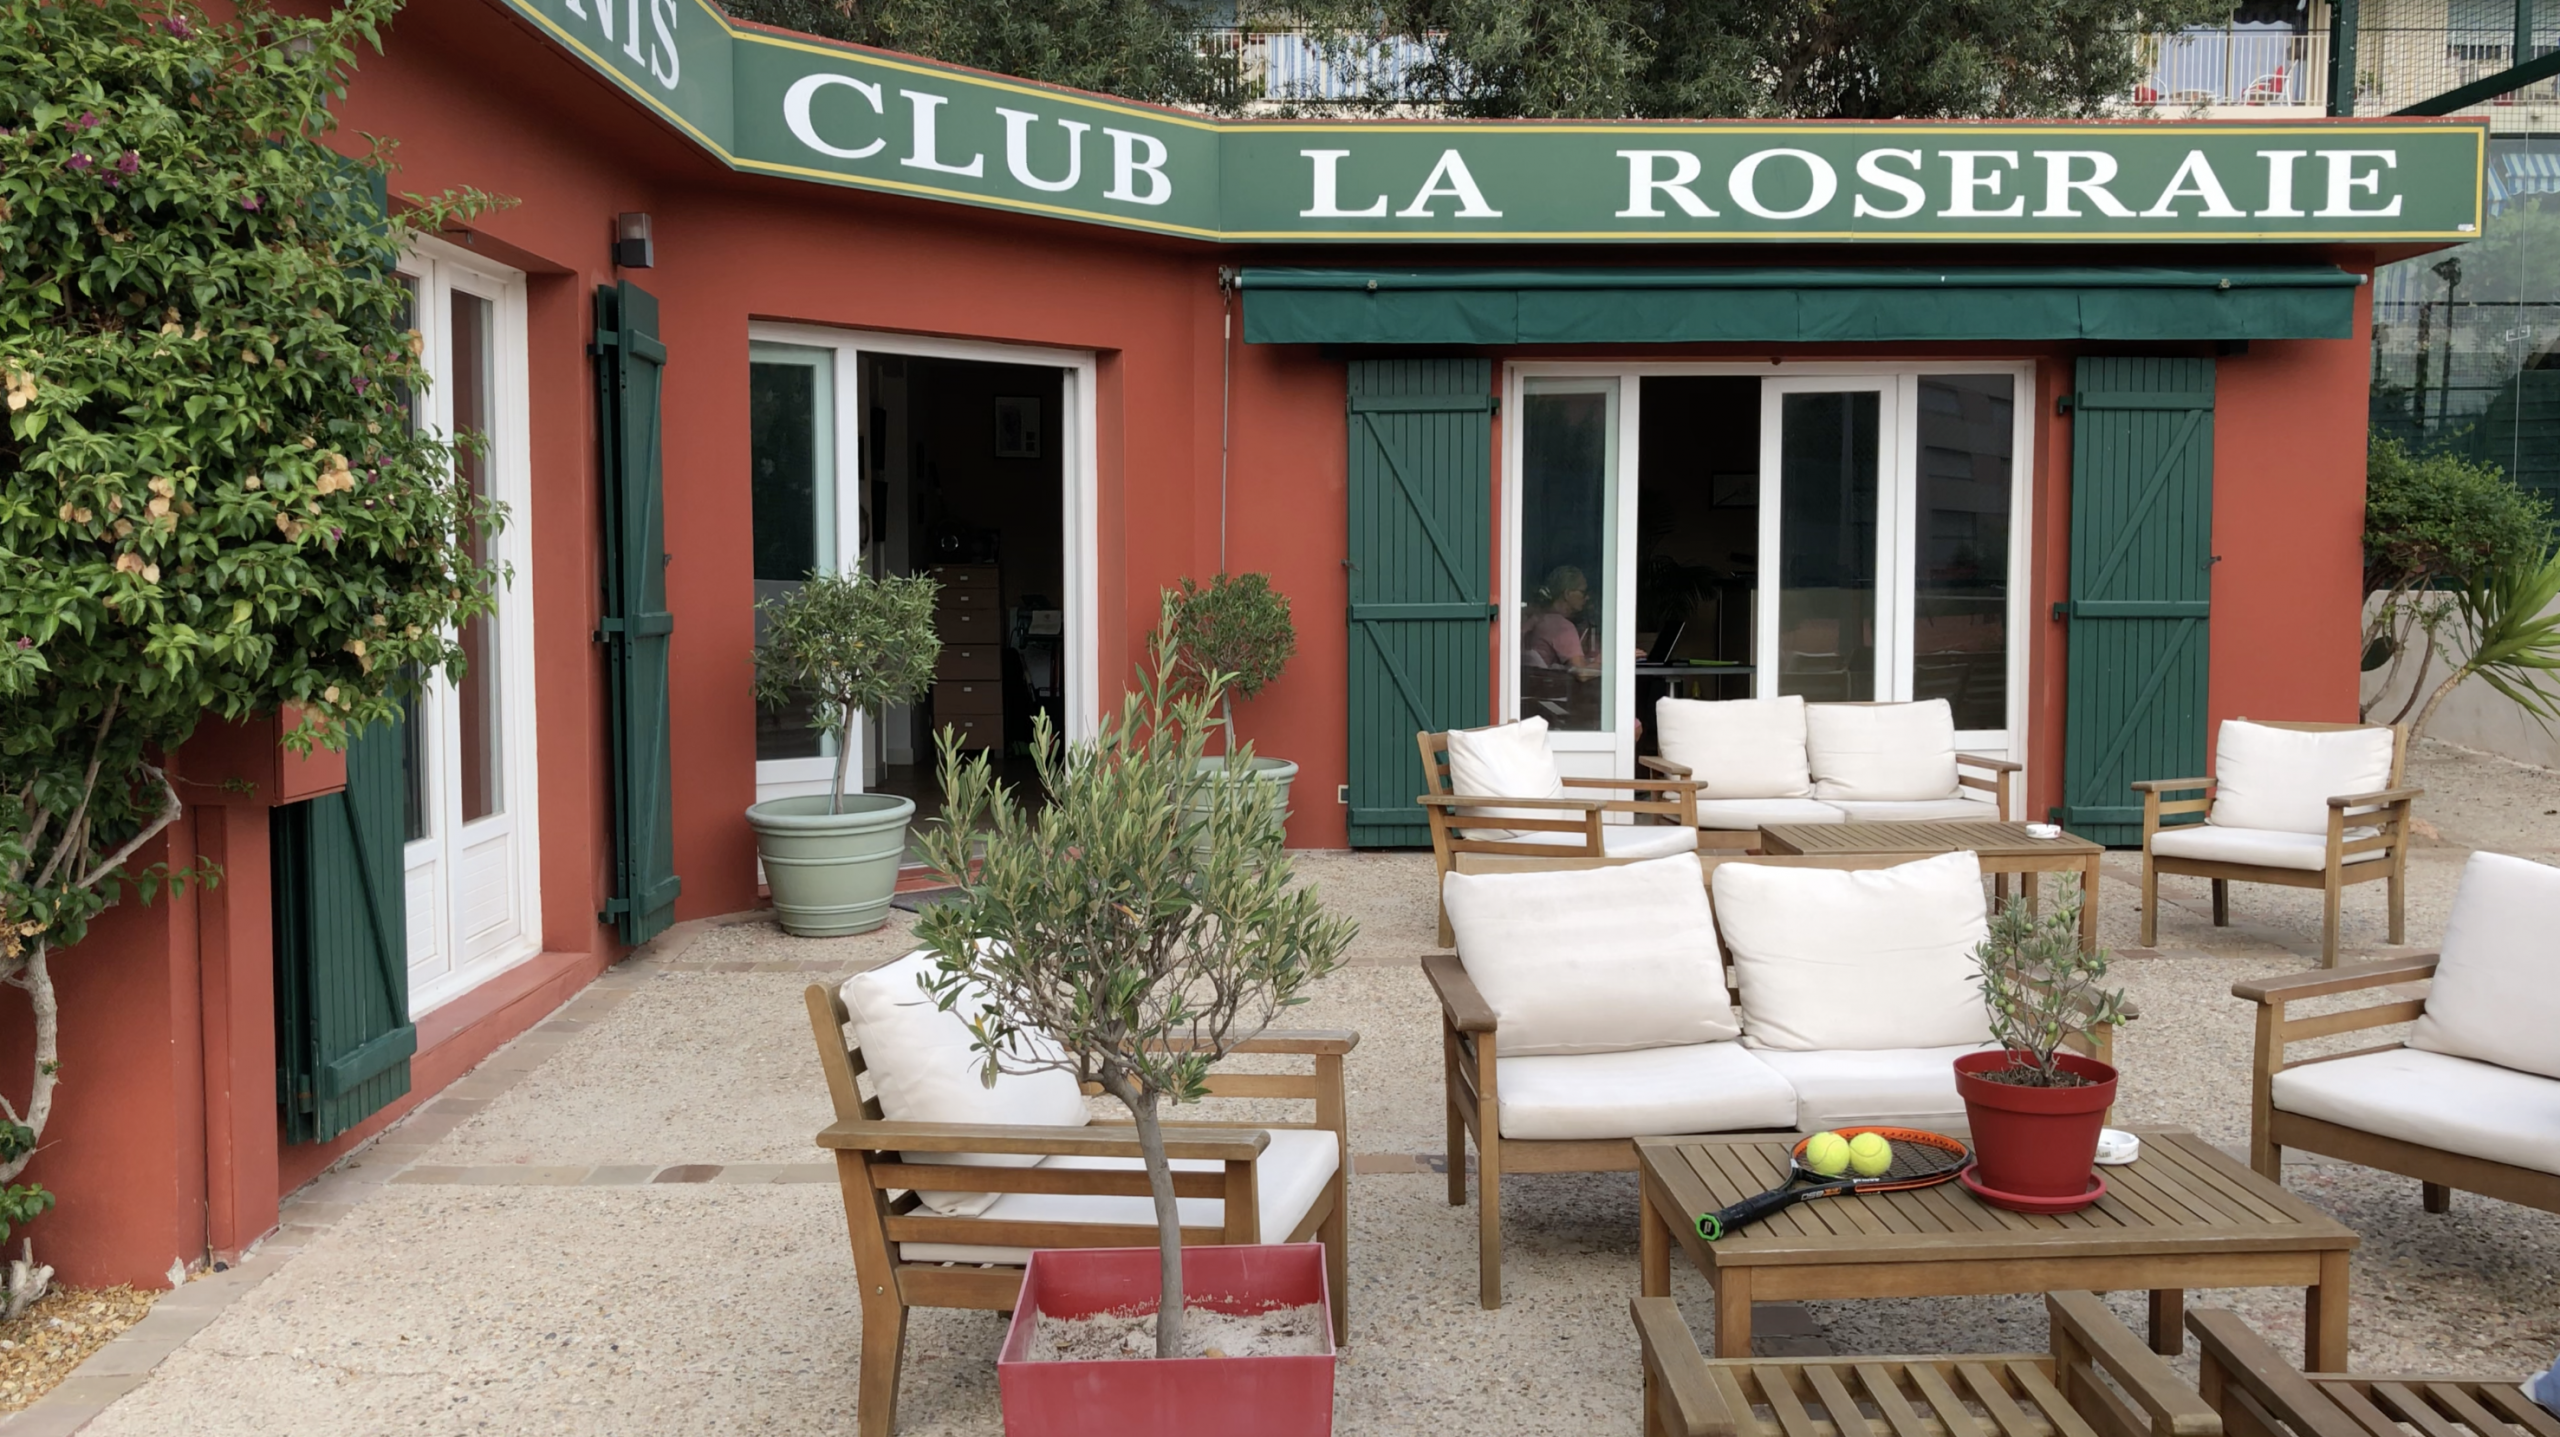 Court tennis club La Roseraie - Espace détente